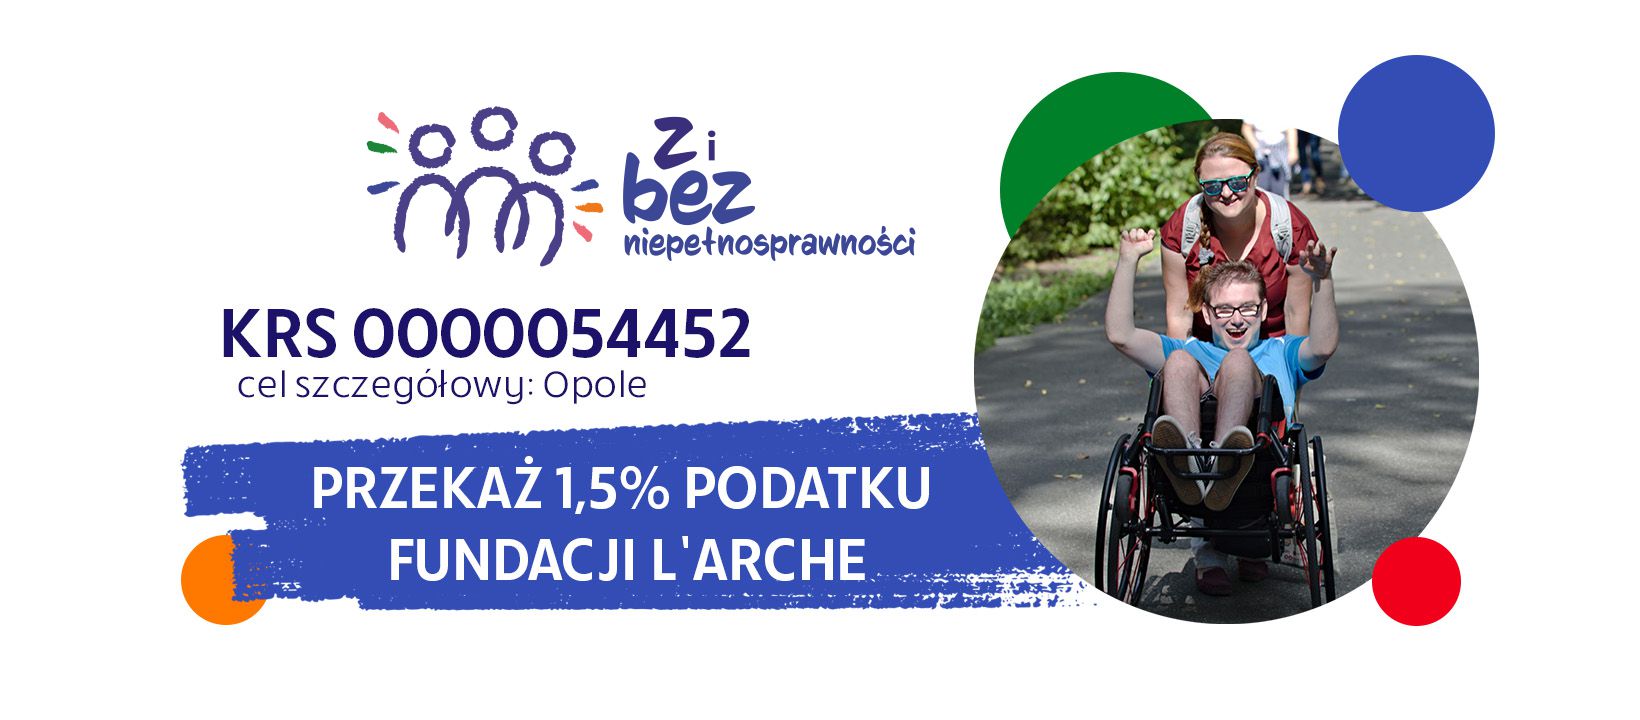 Przekaż 1,5% Fundacji L'Arche KRS: 0000054452 Cel szczegółowy: Opole